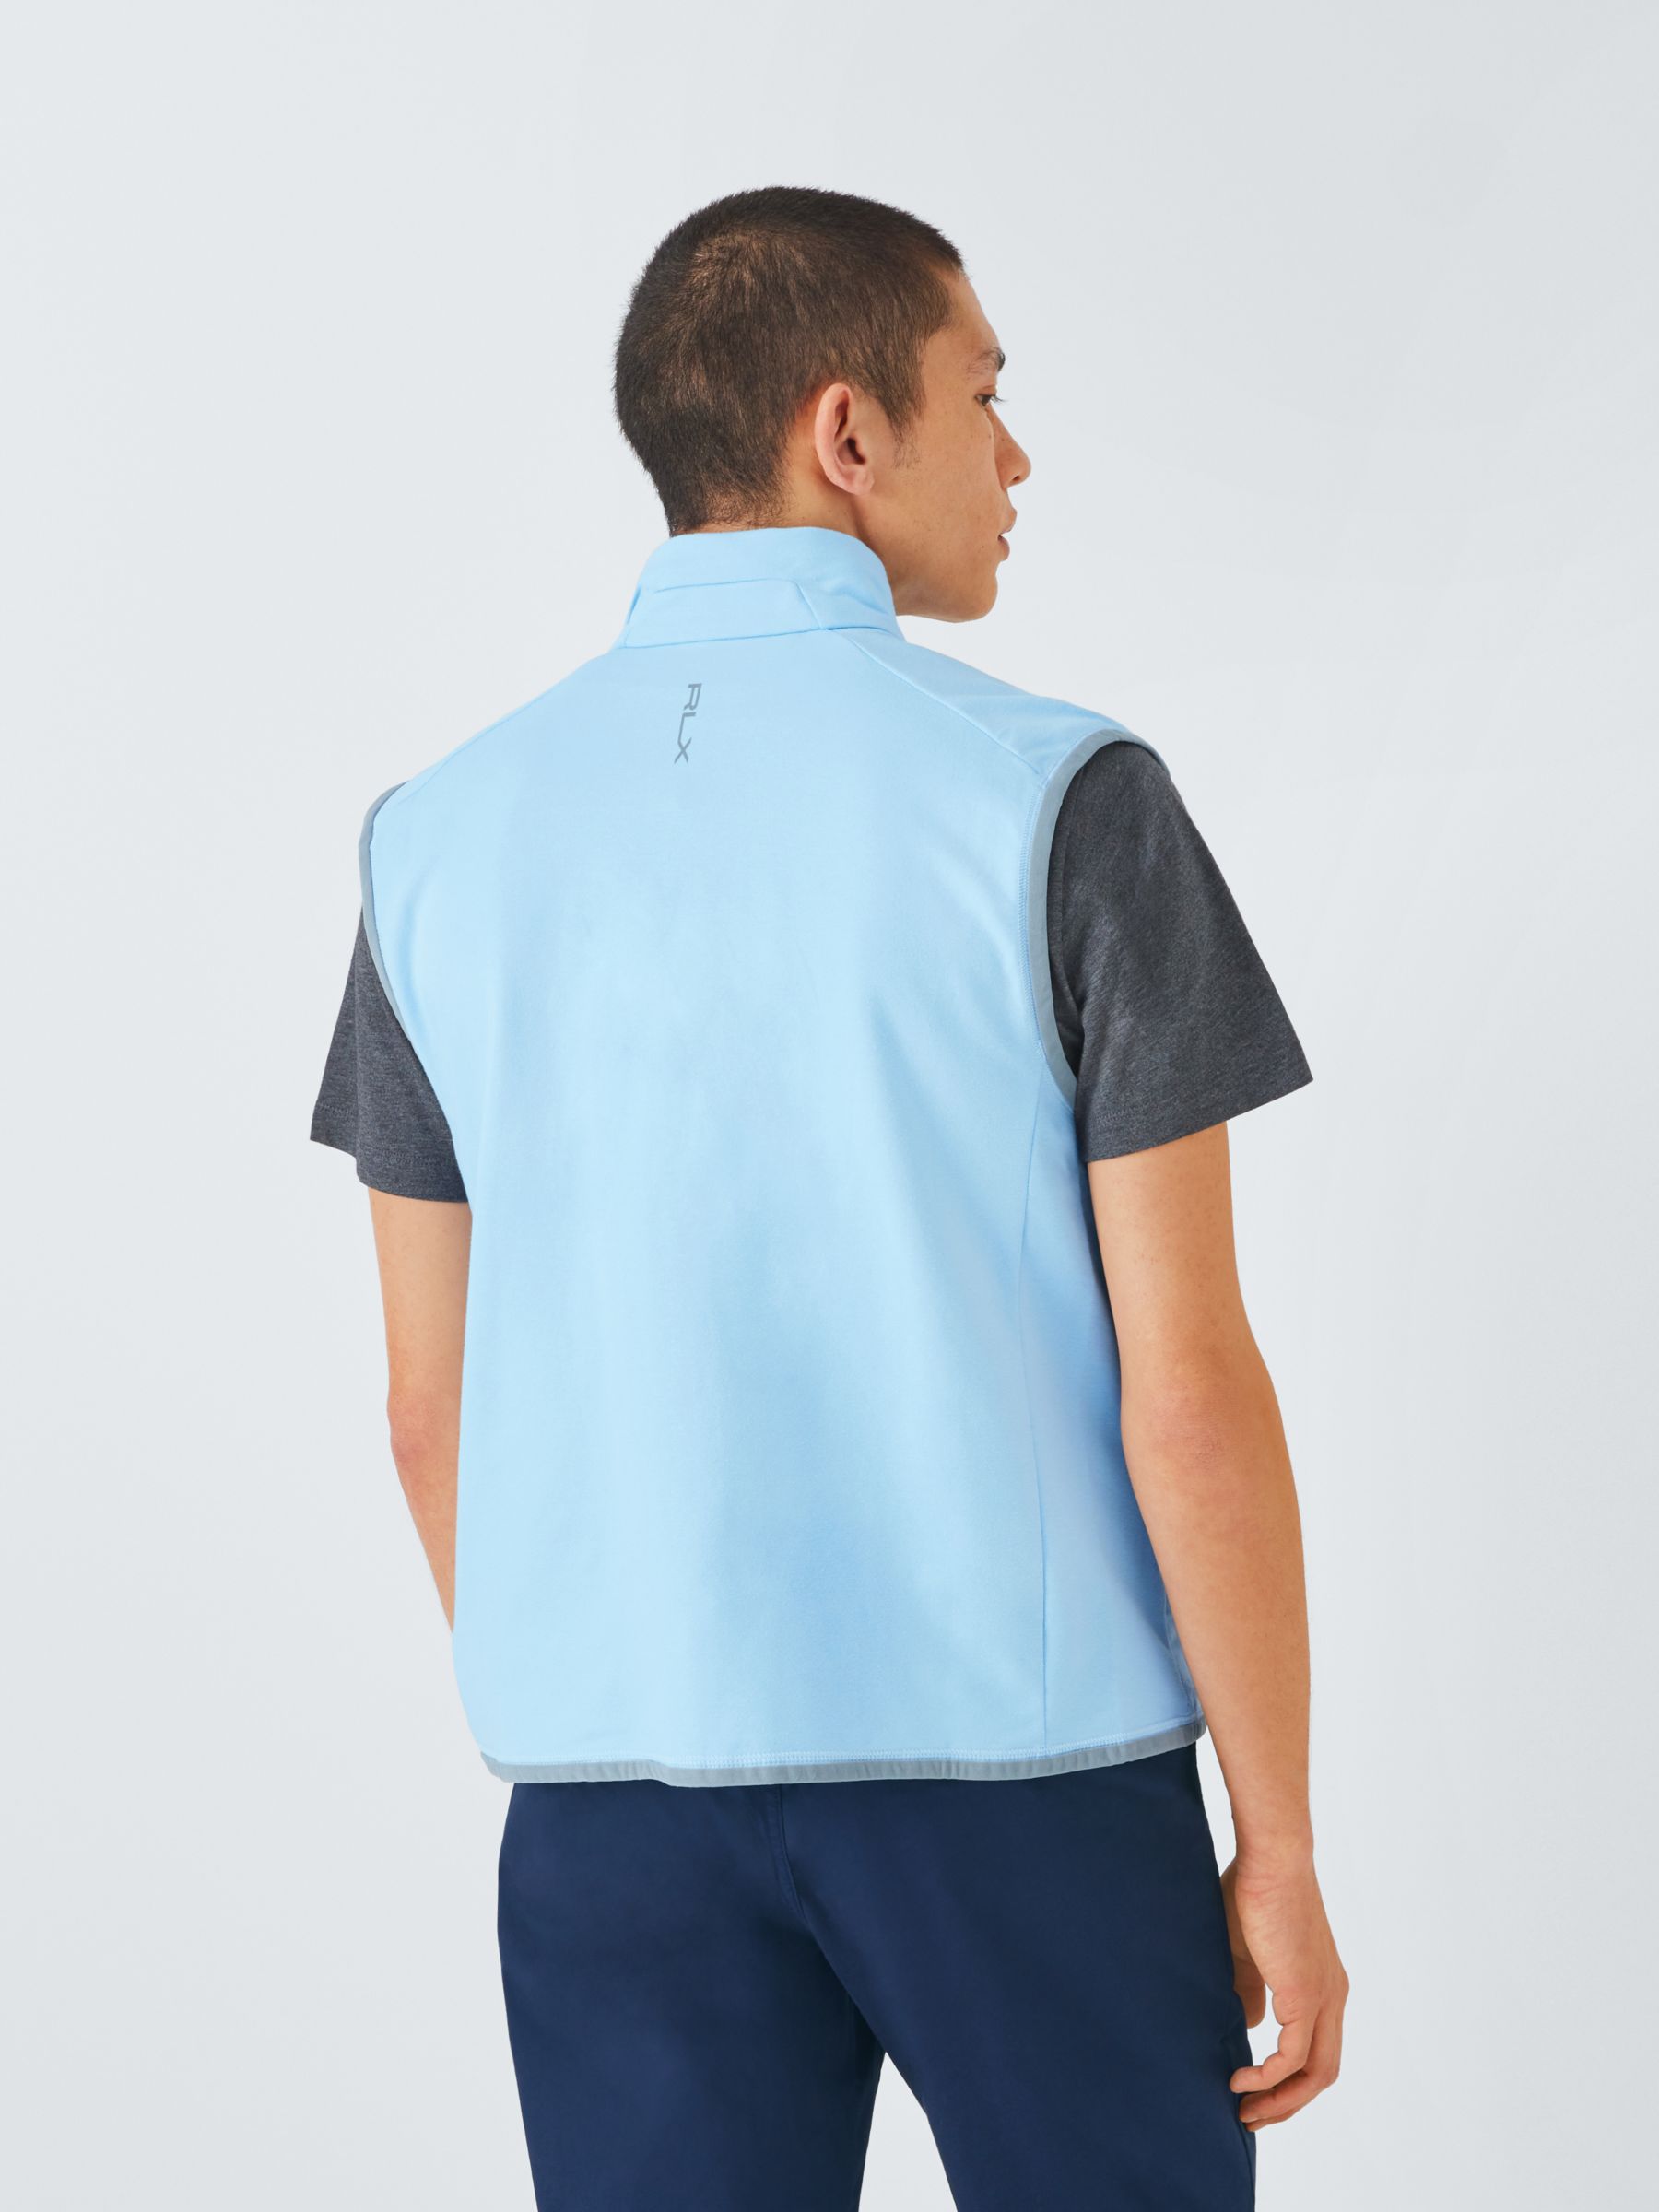 Ralph Lauren Hybrid Full Zip Vest Jacket , Light Blue, M